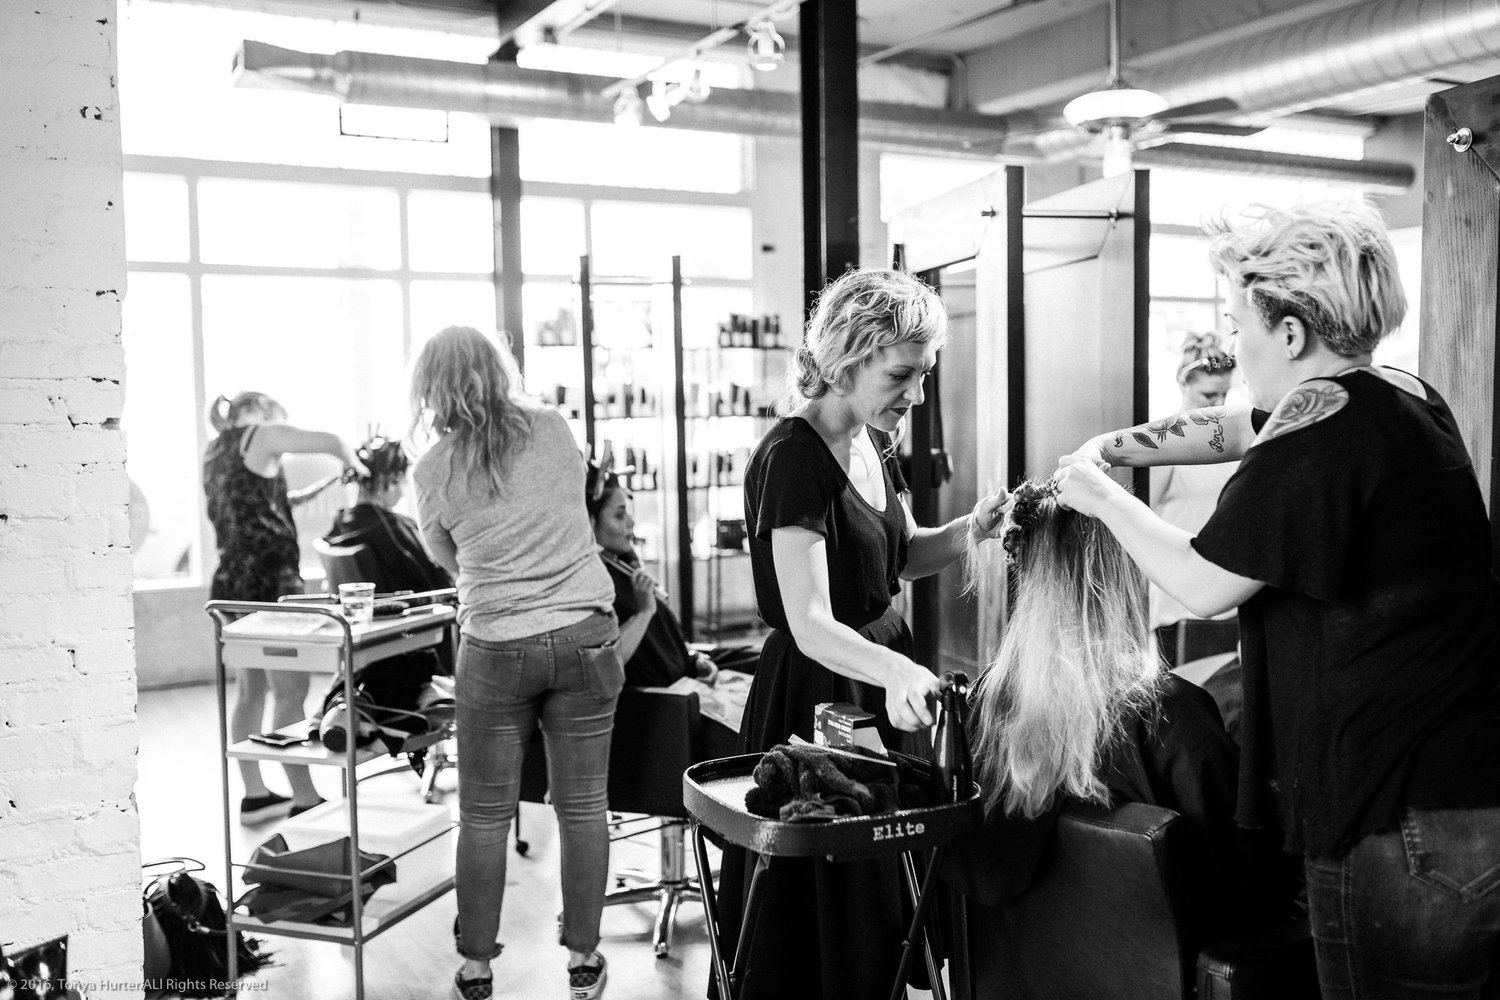 Best Hair Salon In Durham, NC | Culture Hair Studio